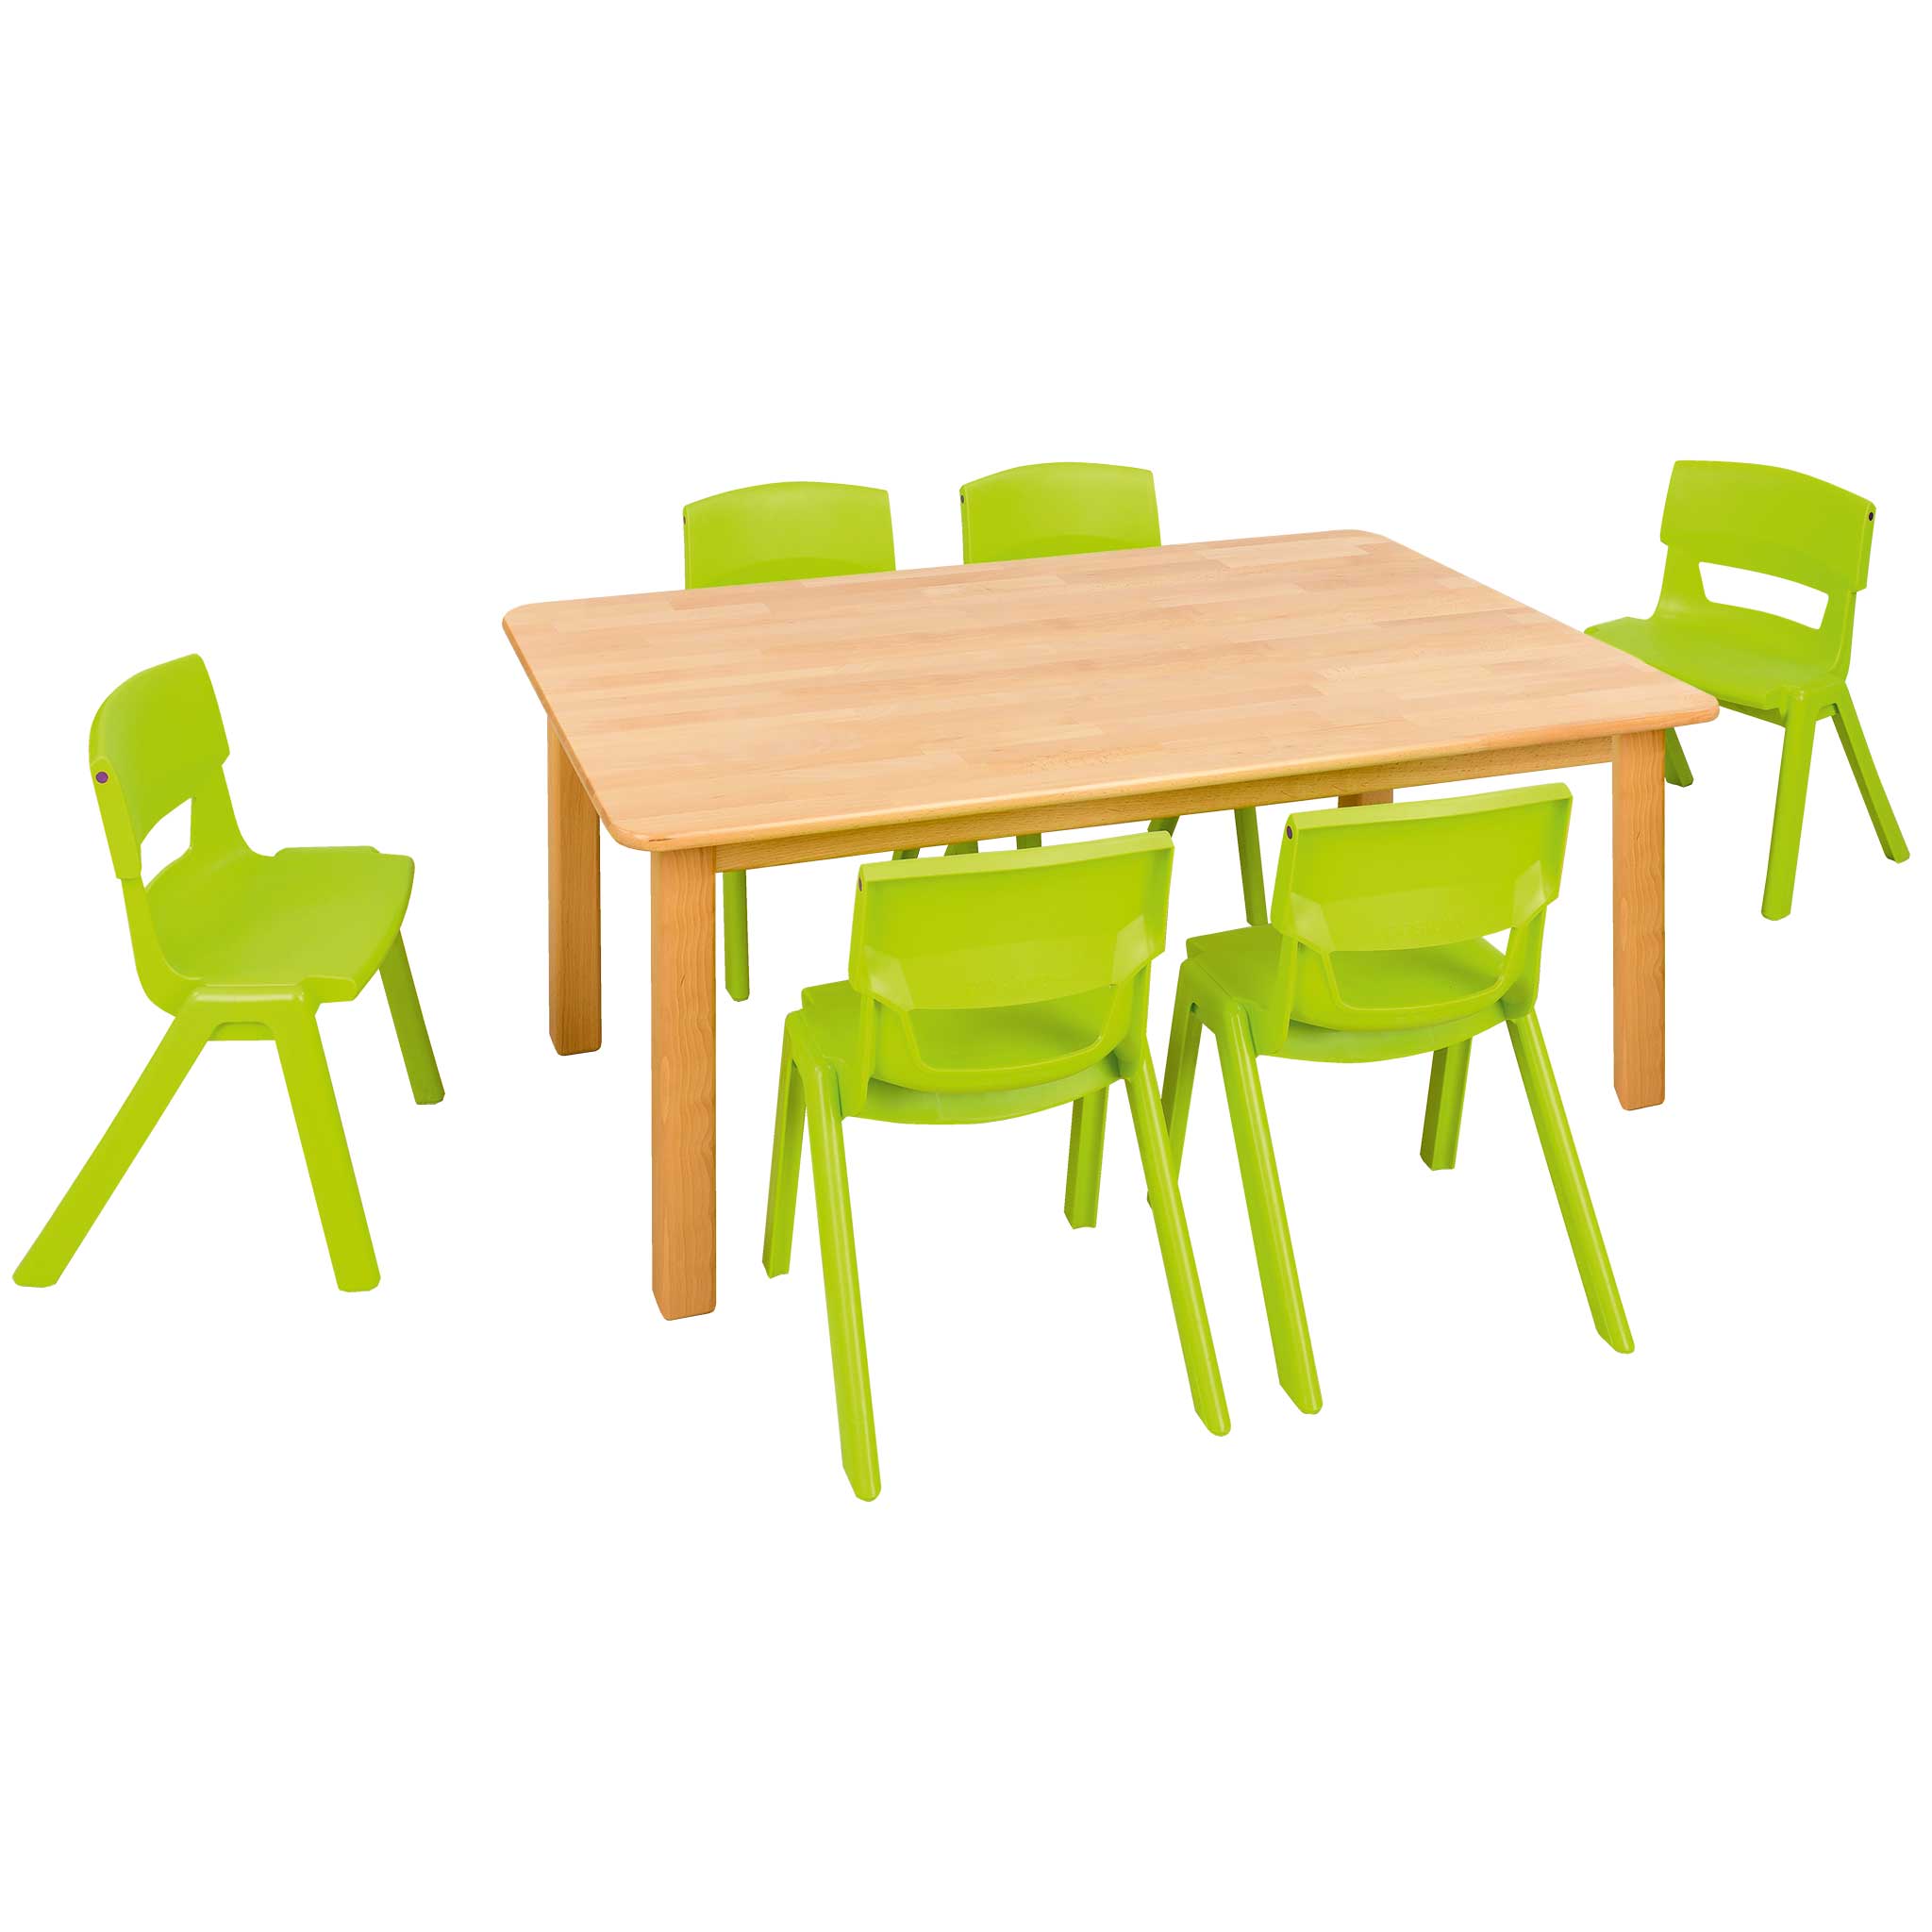 Spar-Set Massiv Zwei Tischhöhe: 42 cm, Sitzhöhe: 26 cm